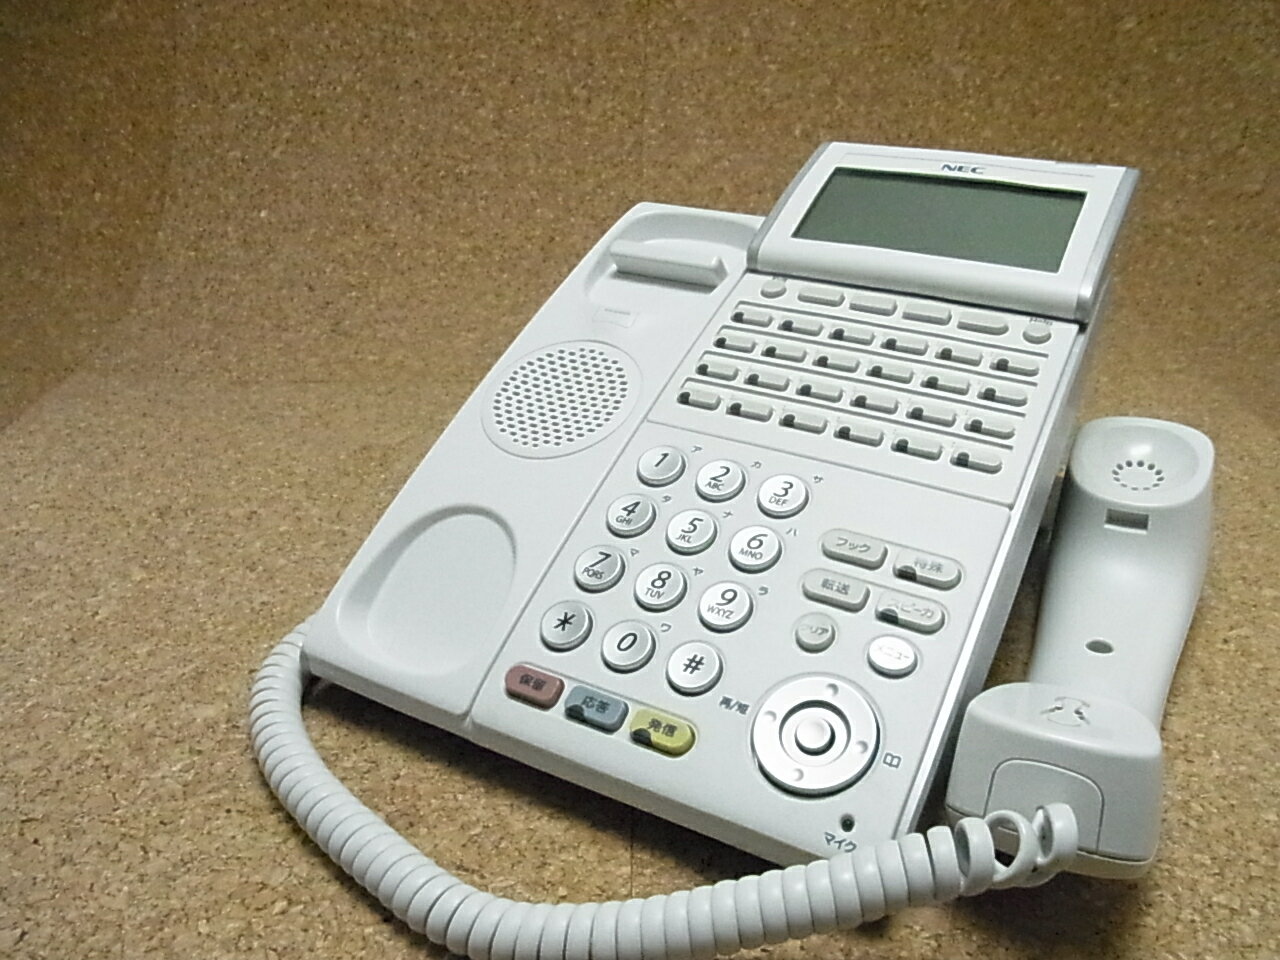 【中古】TD620(K) SAXA サクサ Regalis UT700 漢字表示チルトディスプレイ 30ボタン電話機 [オフィス用品] ビジネスフォン [オフィス用品]